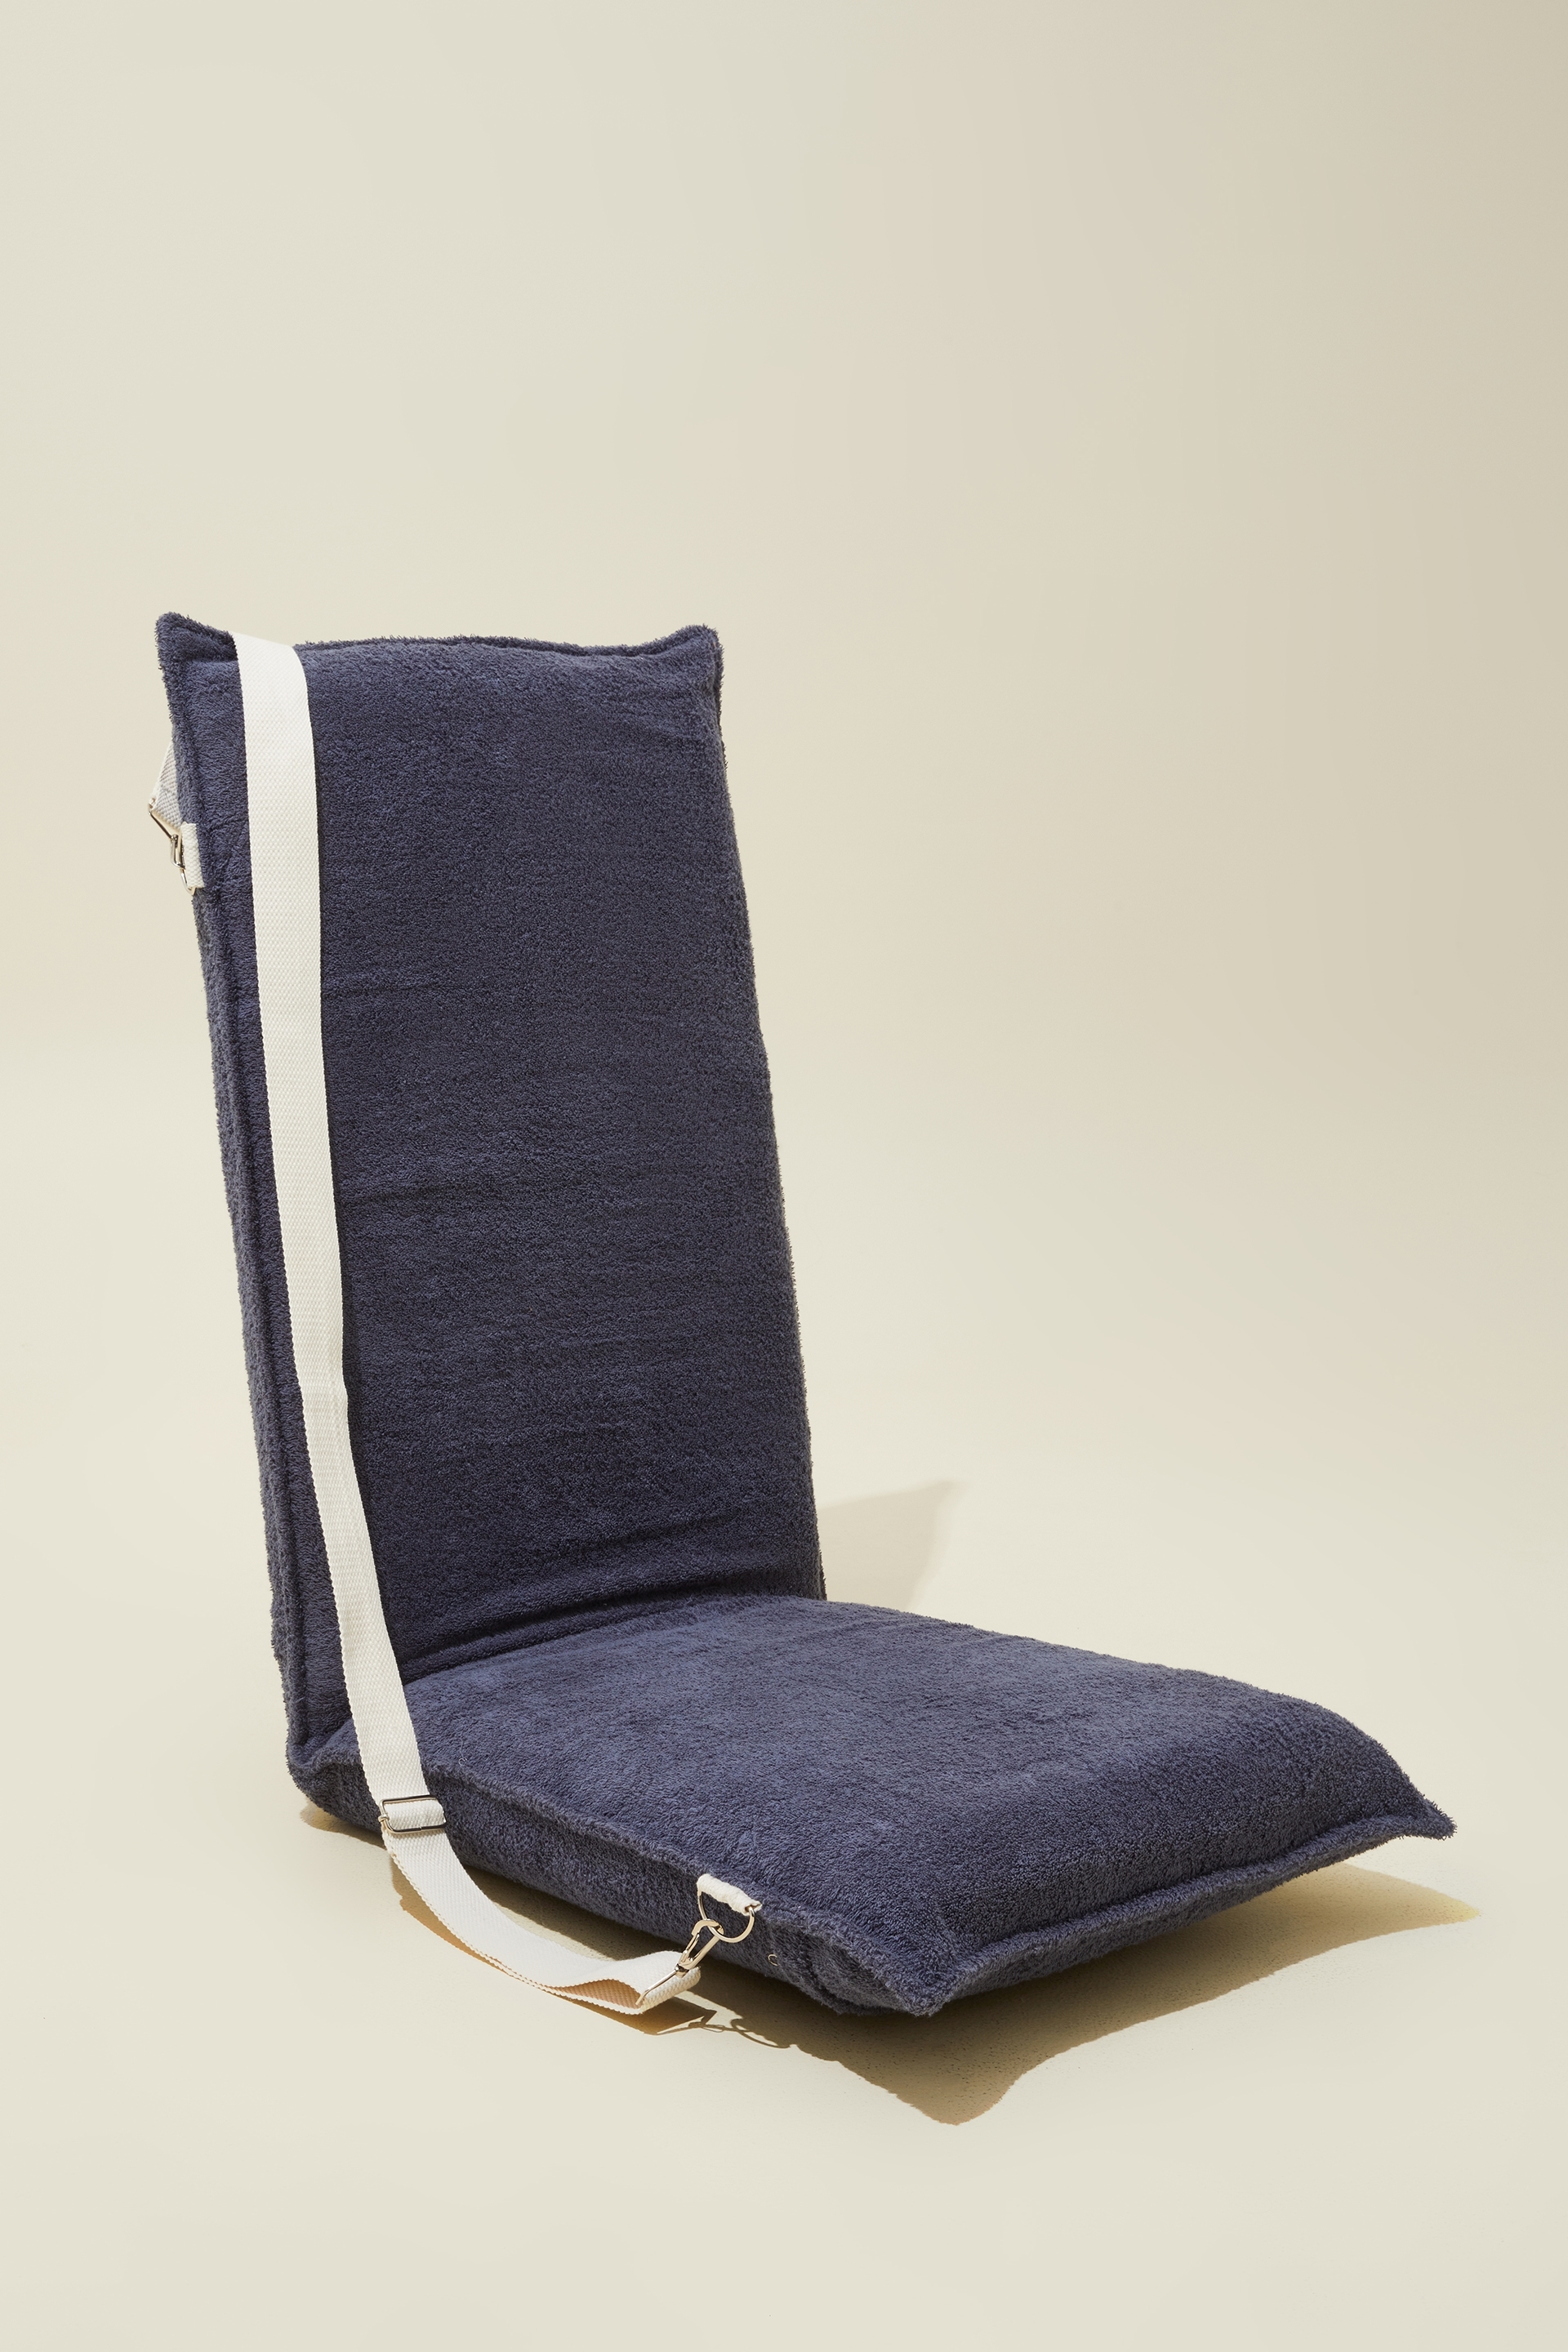 Rubi - Terry Folding Chair - Navy